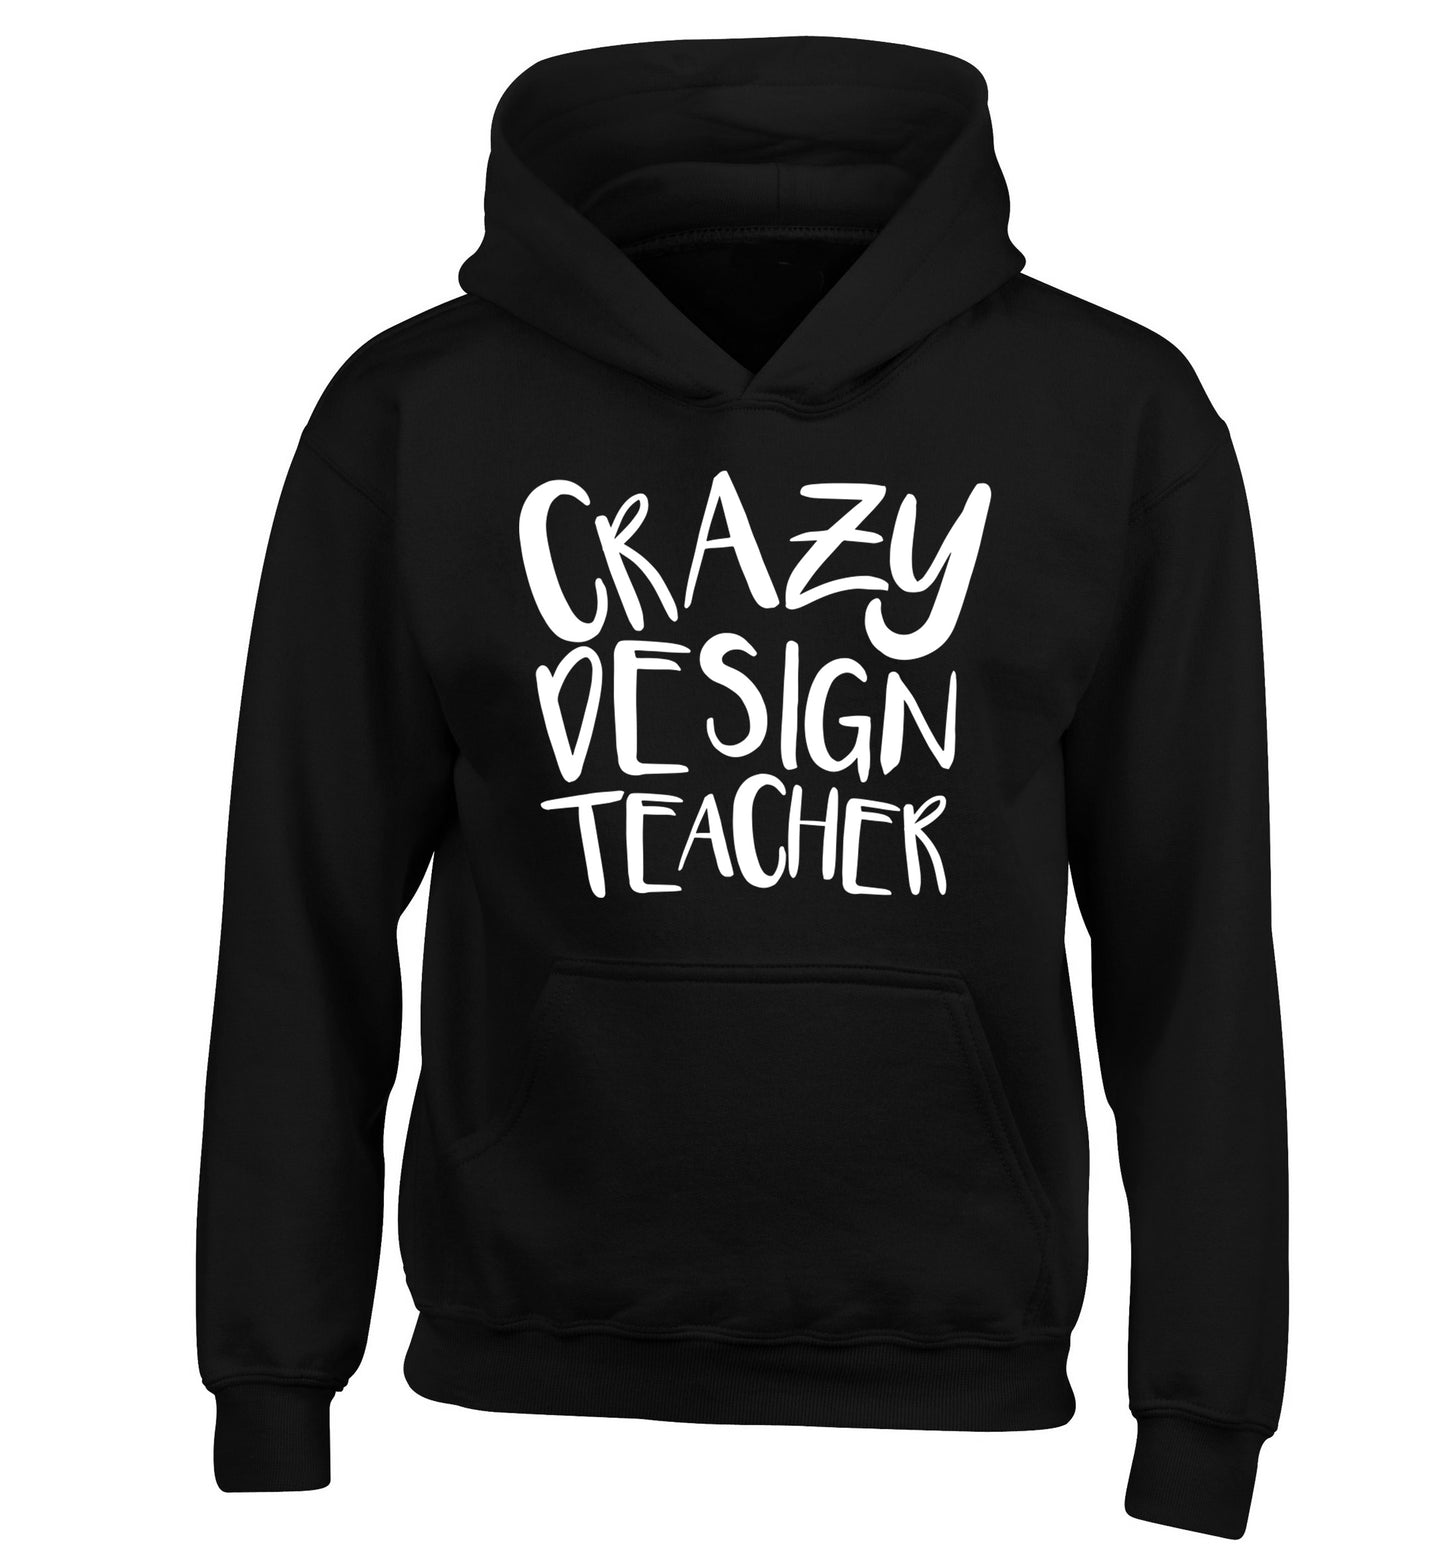 Crazy design teacher children's black hoodie 12-13 Years